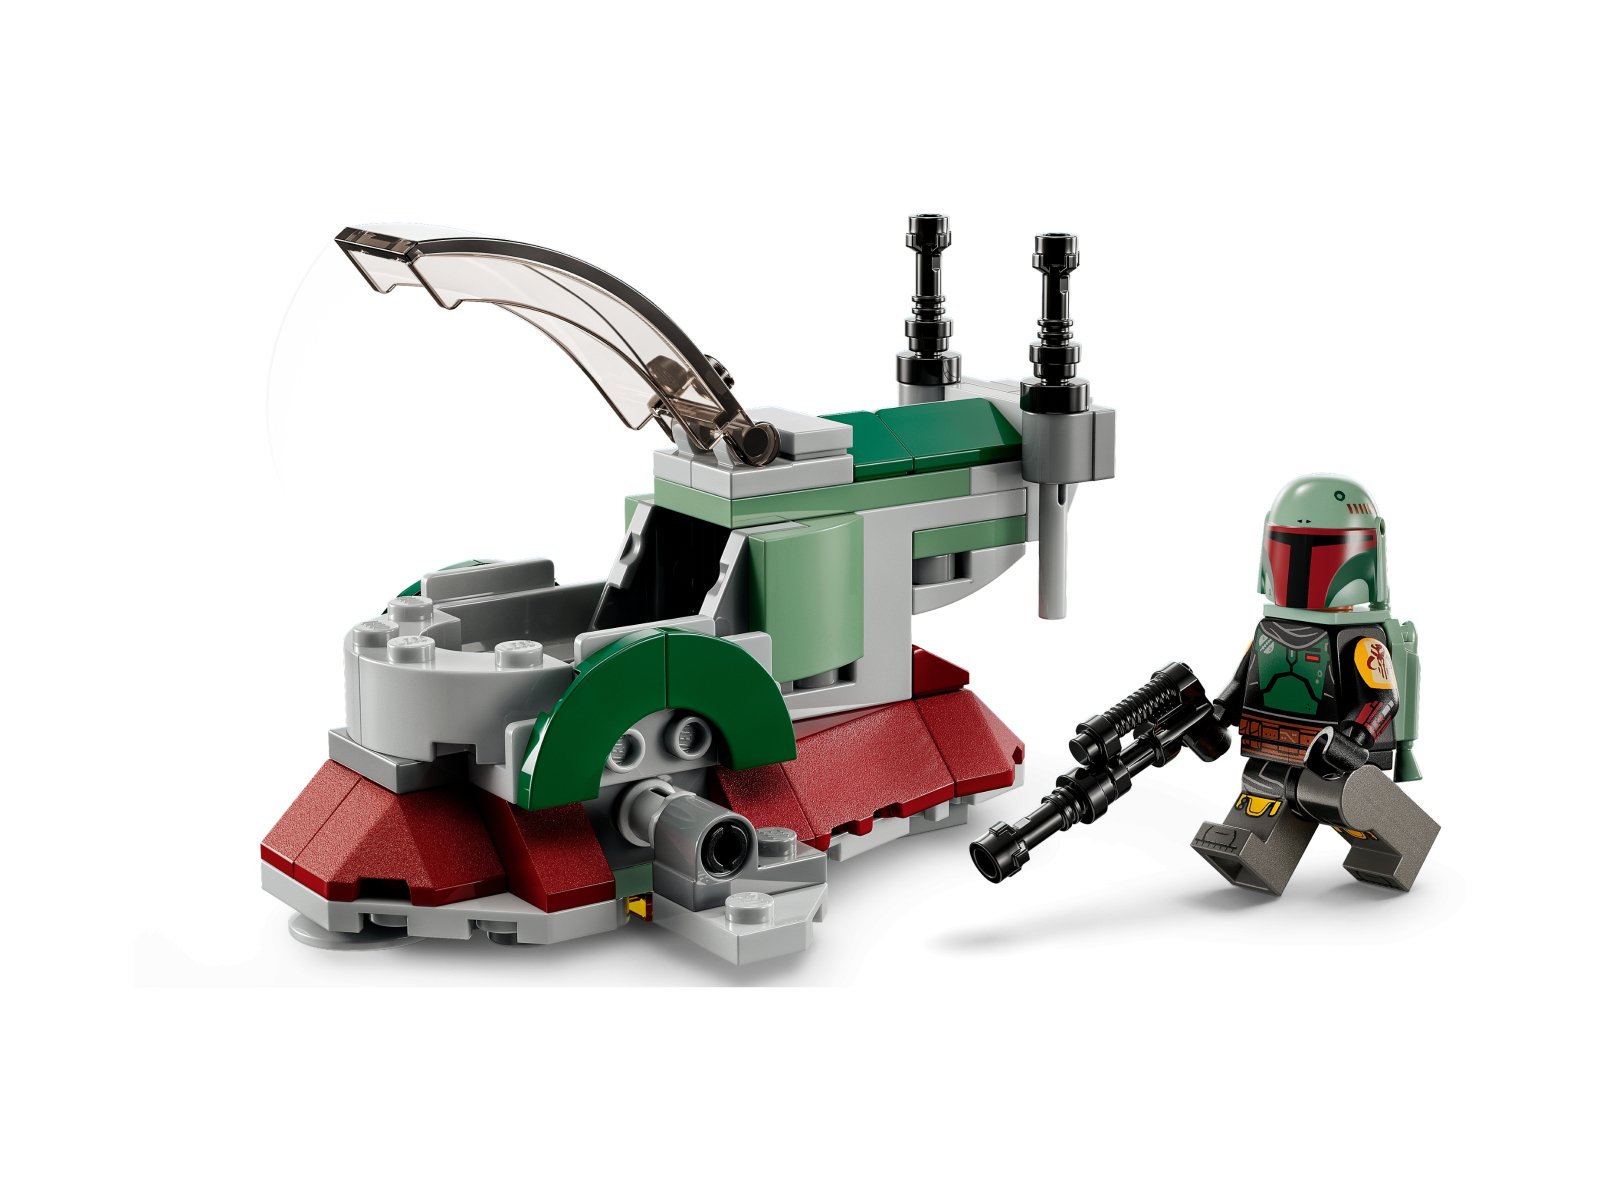 LEGO 75344 Star Wars Mikromyśliwiec kosmiczny Boby Fetta™